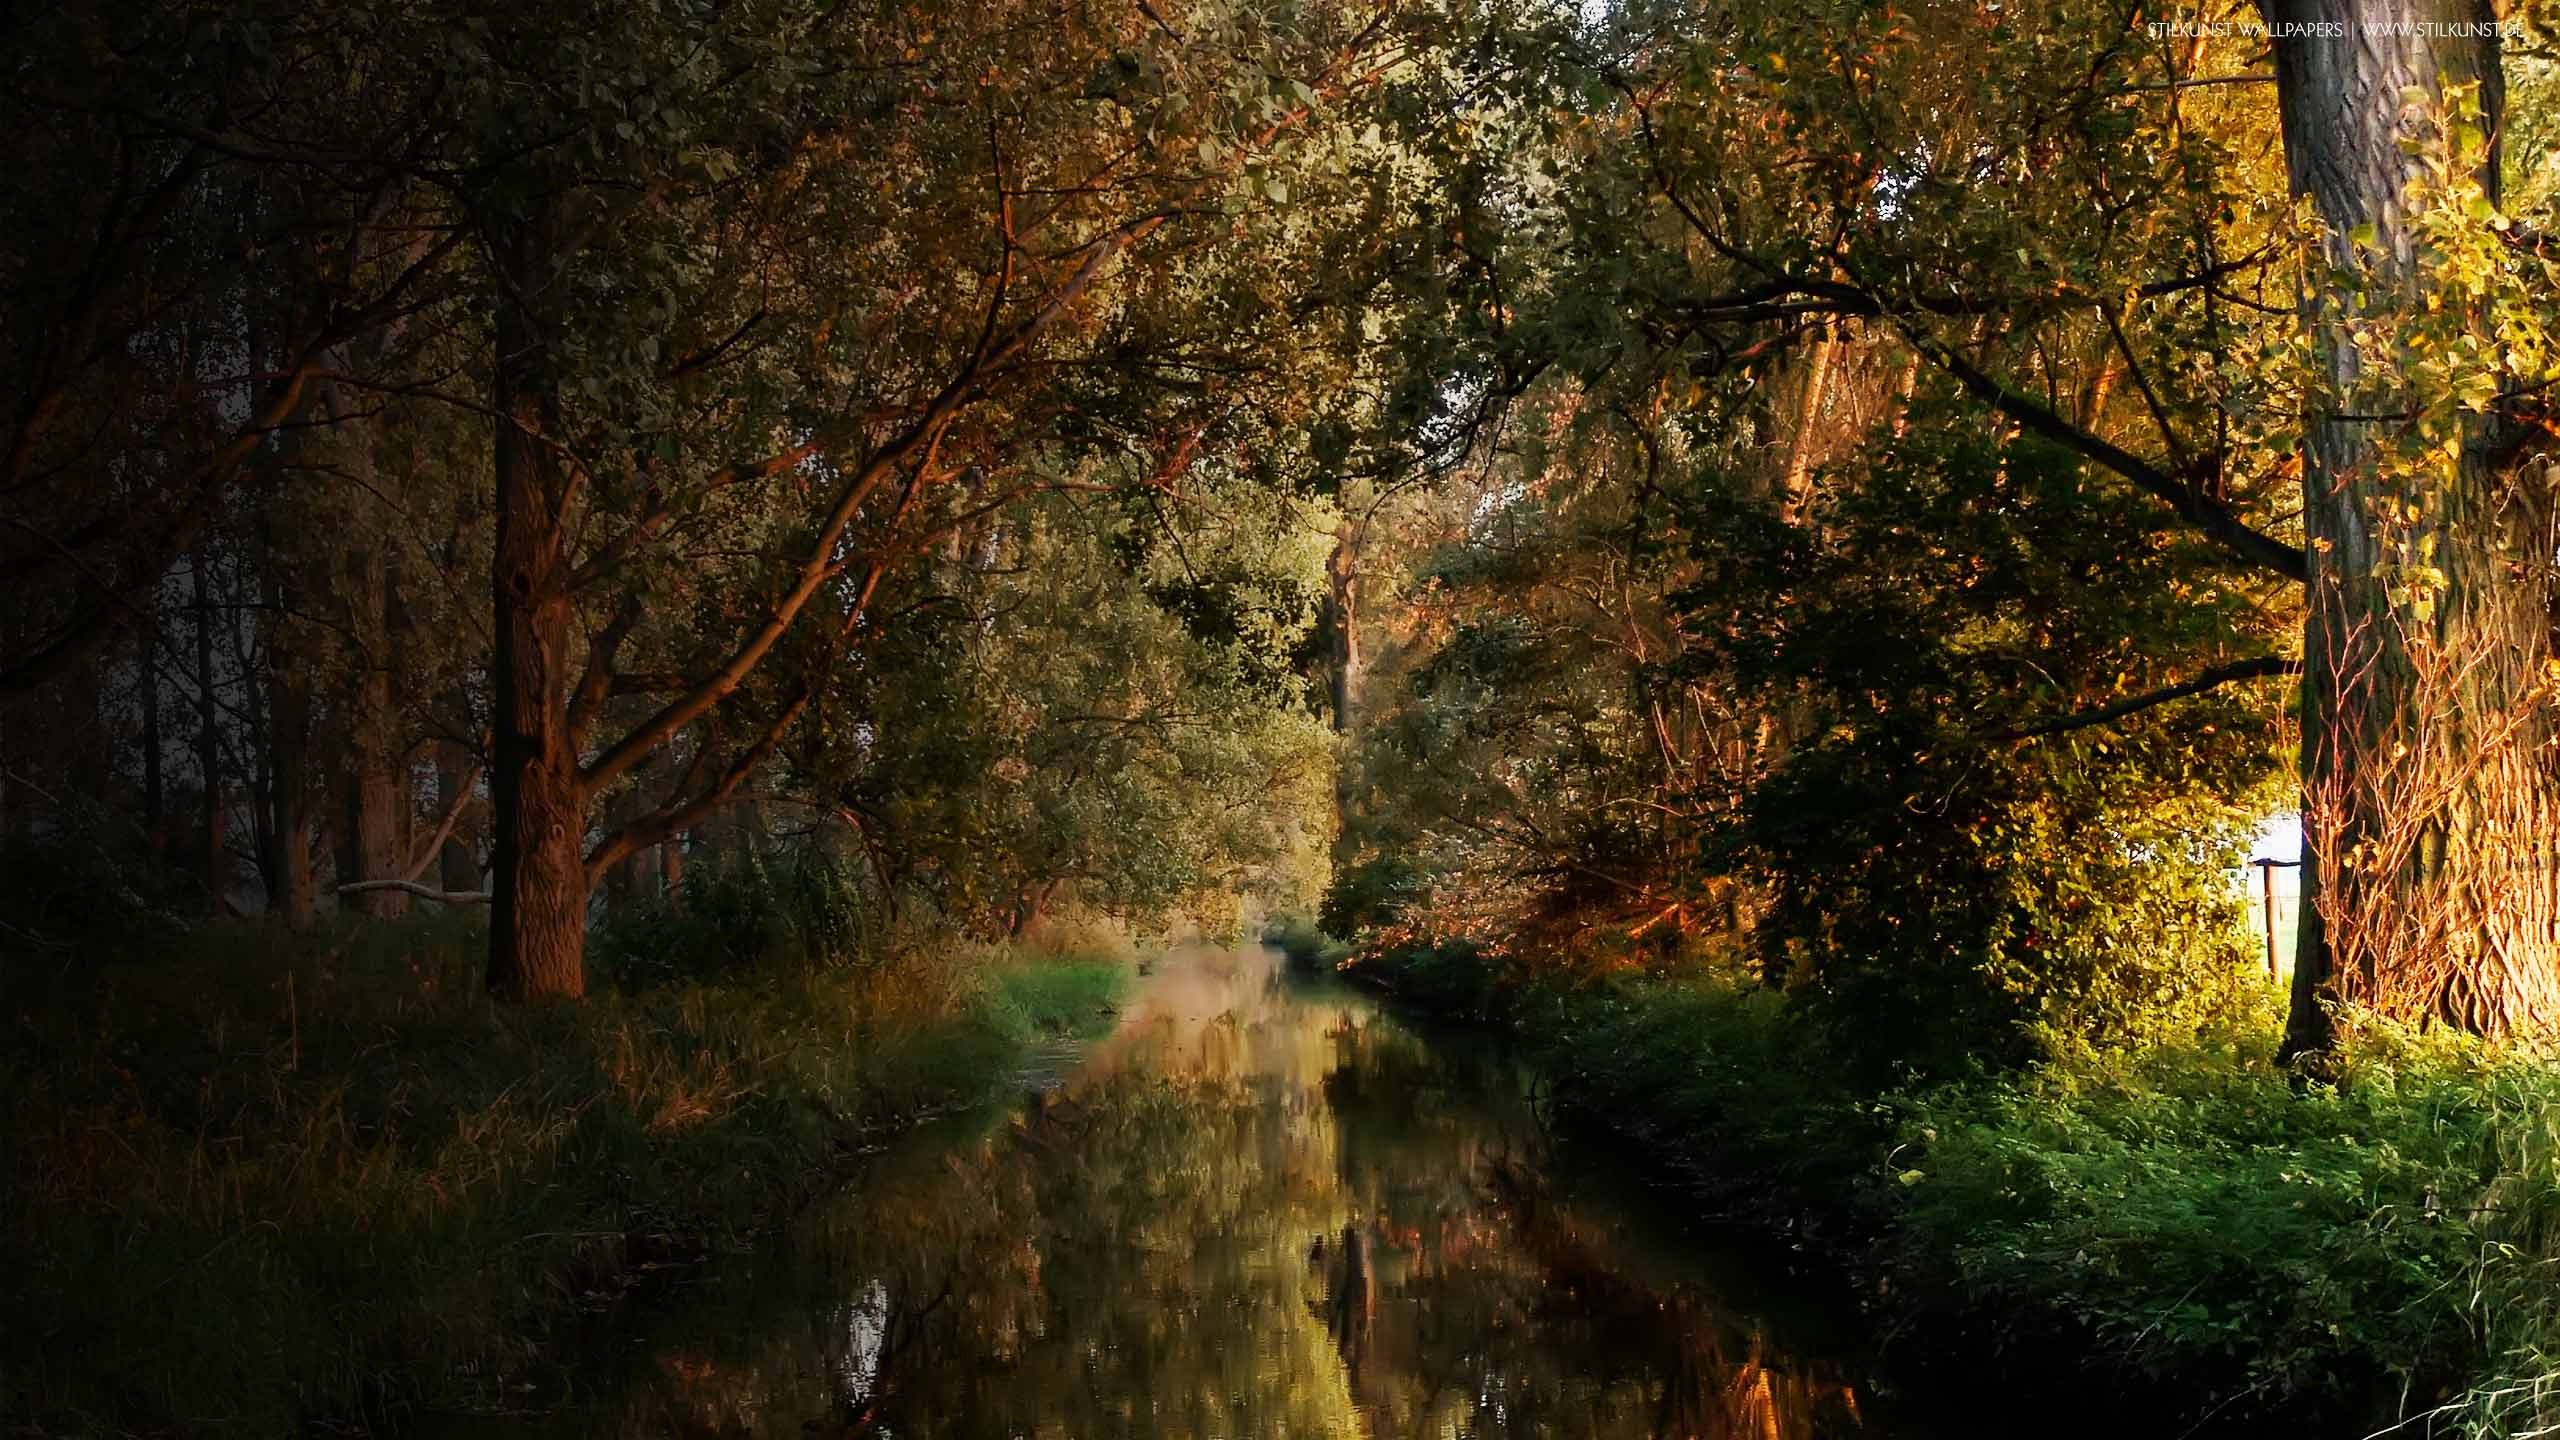 Farben im Herbst | 2560 x 1440px | Bild: ©by Sabrina | Reiner | www.stilkunst.de | Lizenz: CC BY-SA